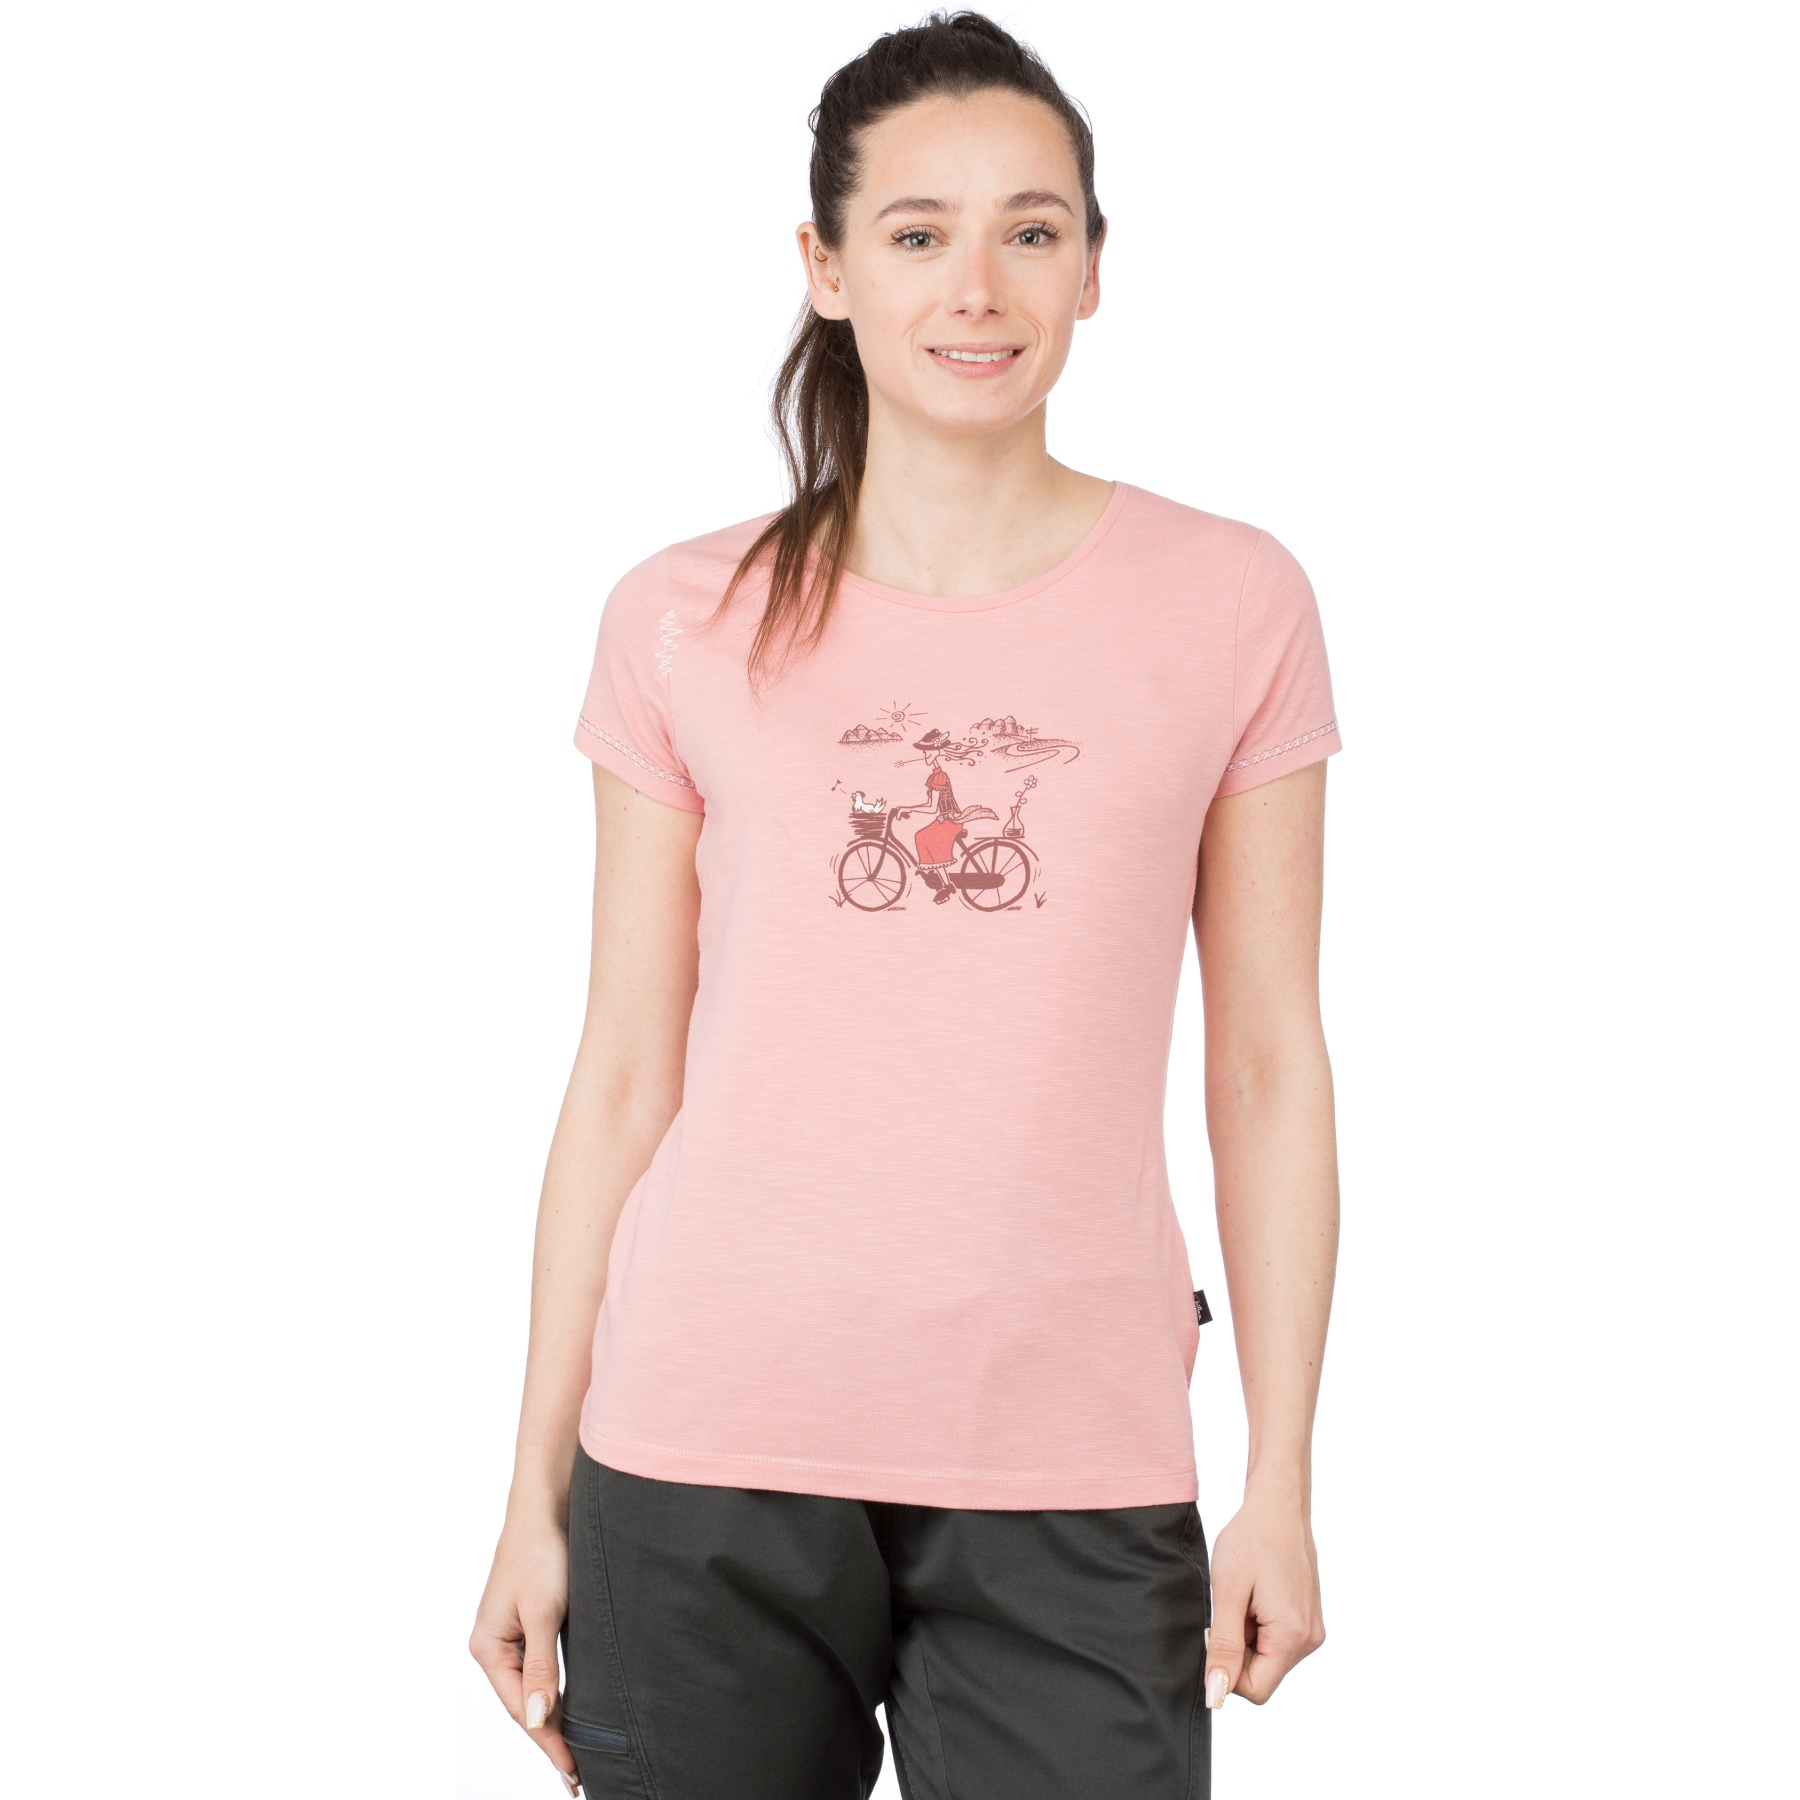 Produktbild von Chillaz Gandia Tyrolean Trip T-Shirt Damen - rose